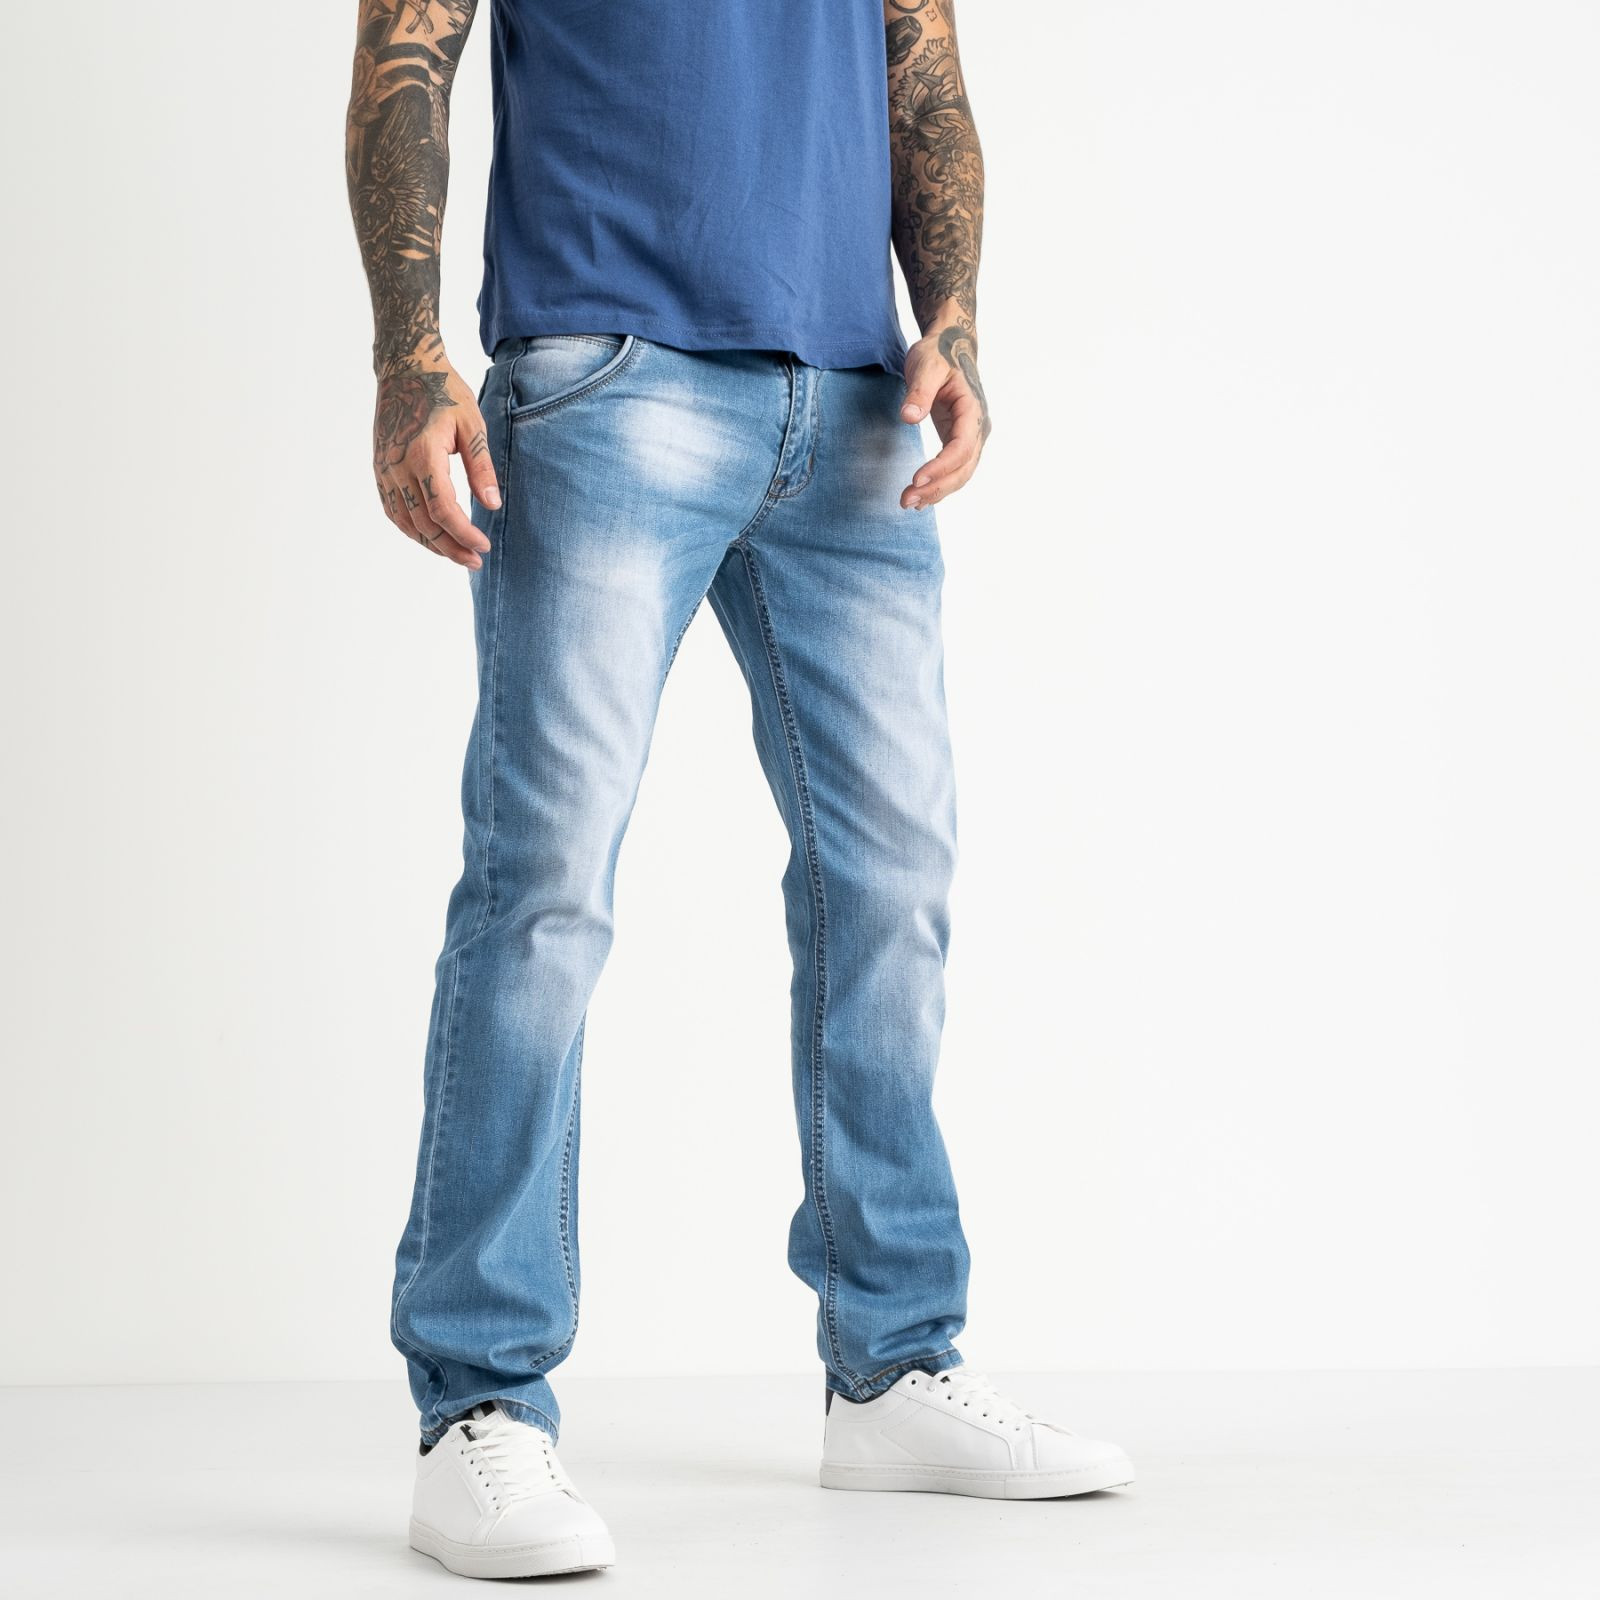 0002-28 LT Likgass джинсы мужские голубые котоновые (7 ед. размеры: 29.30.31.32.33.34.36)